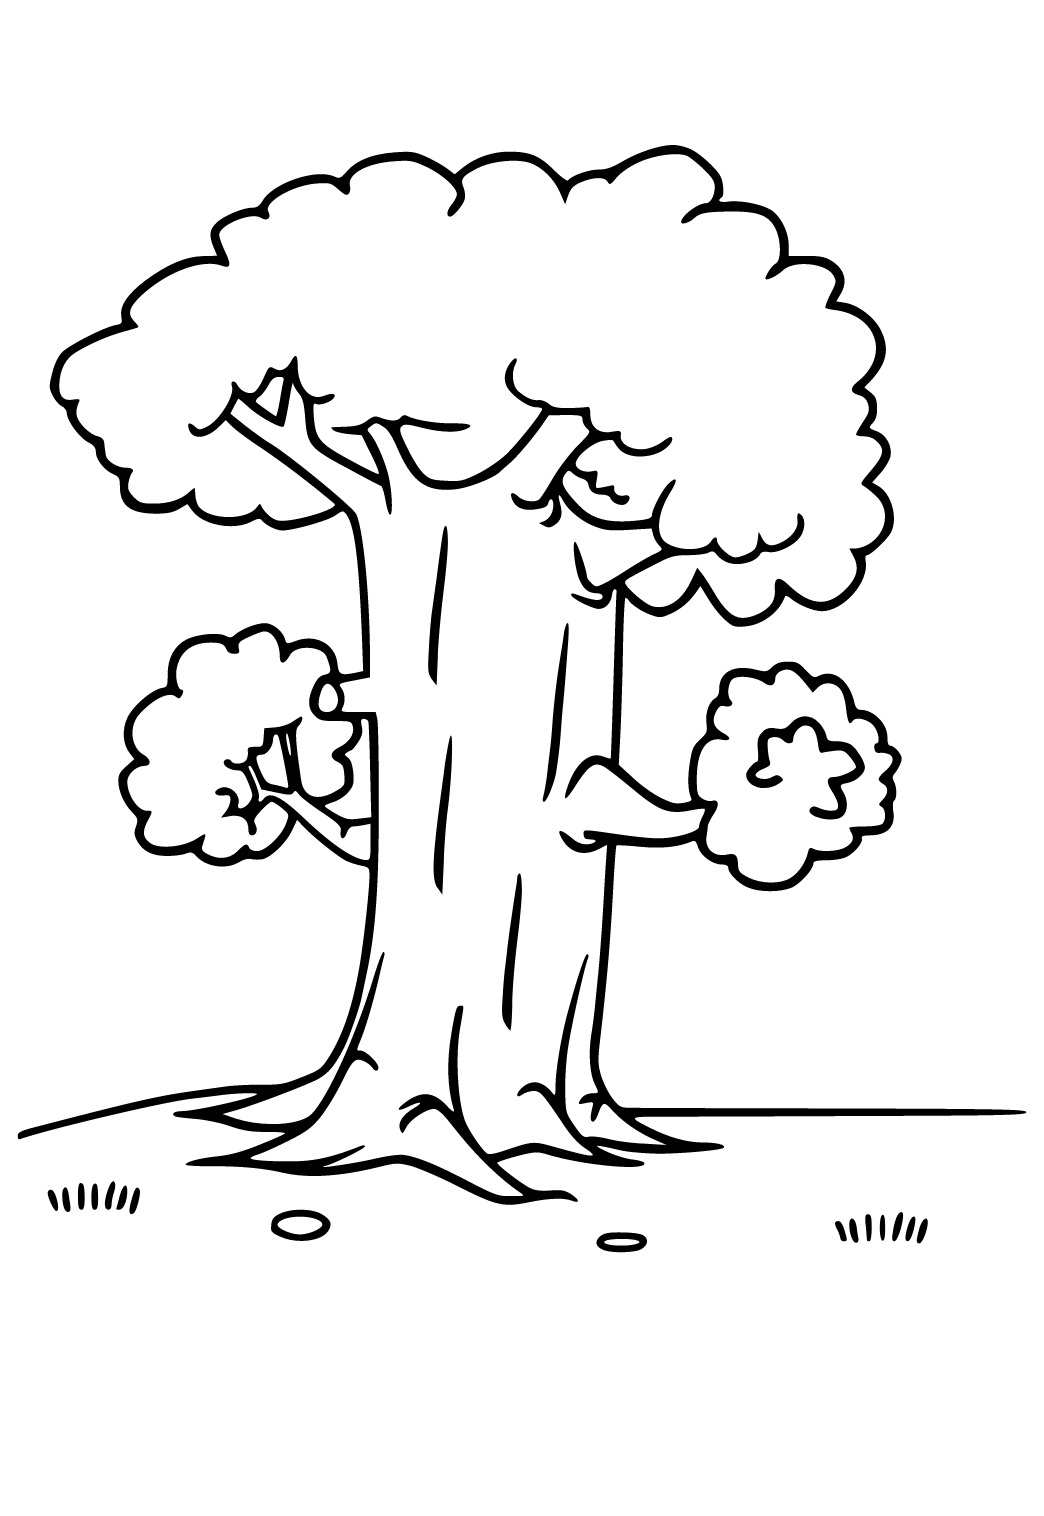 Pohon